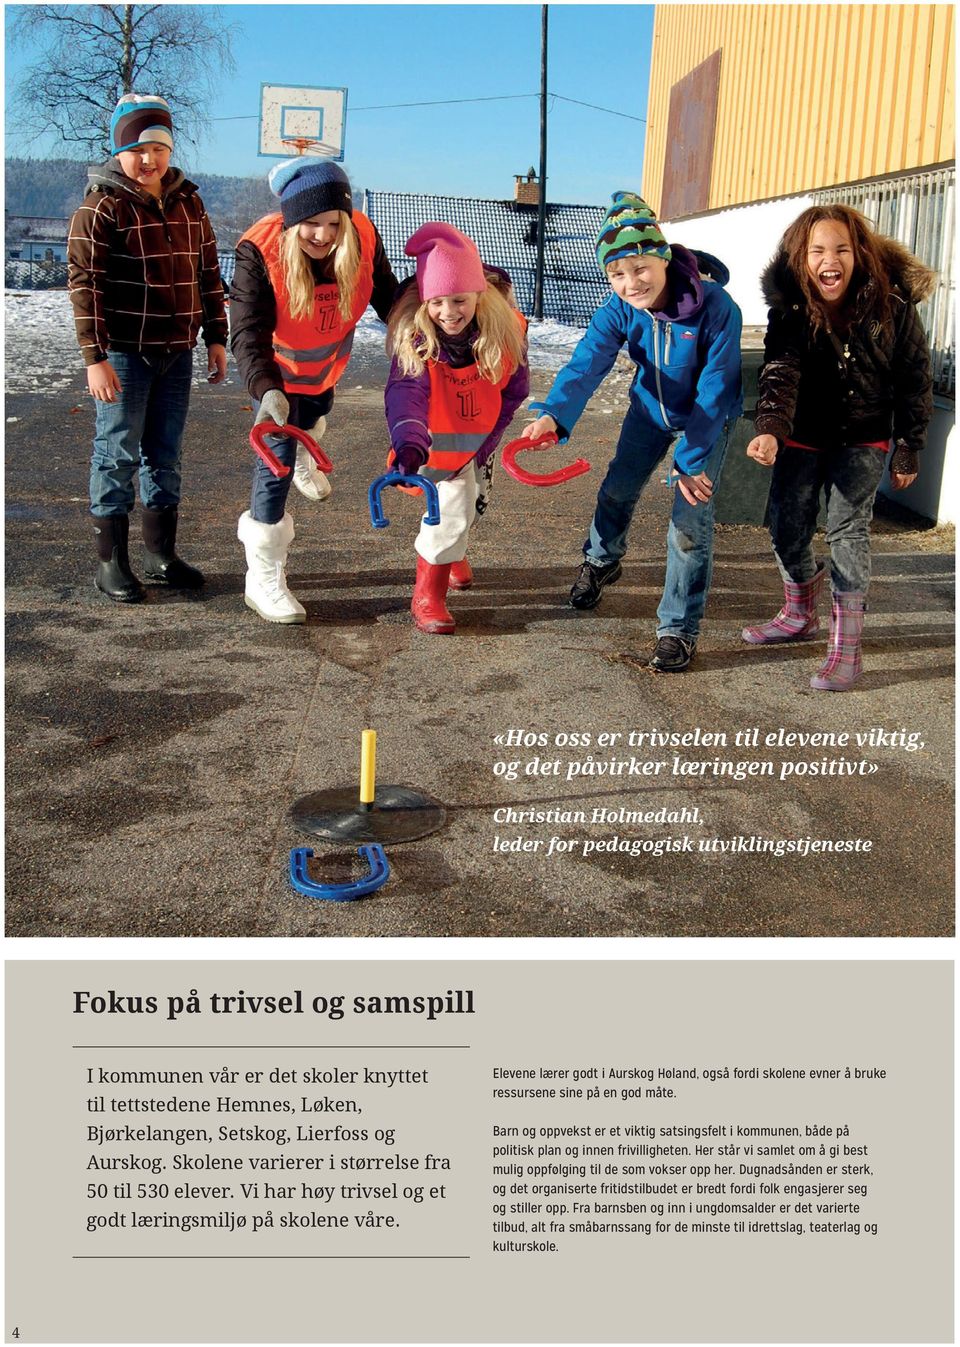 4 Elevene lærer godt i Aurskog Høland, også fordi skolene evner å bruke ressursene sine på en god måte.